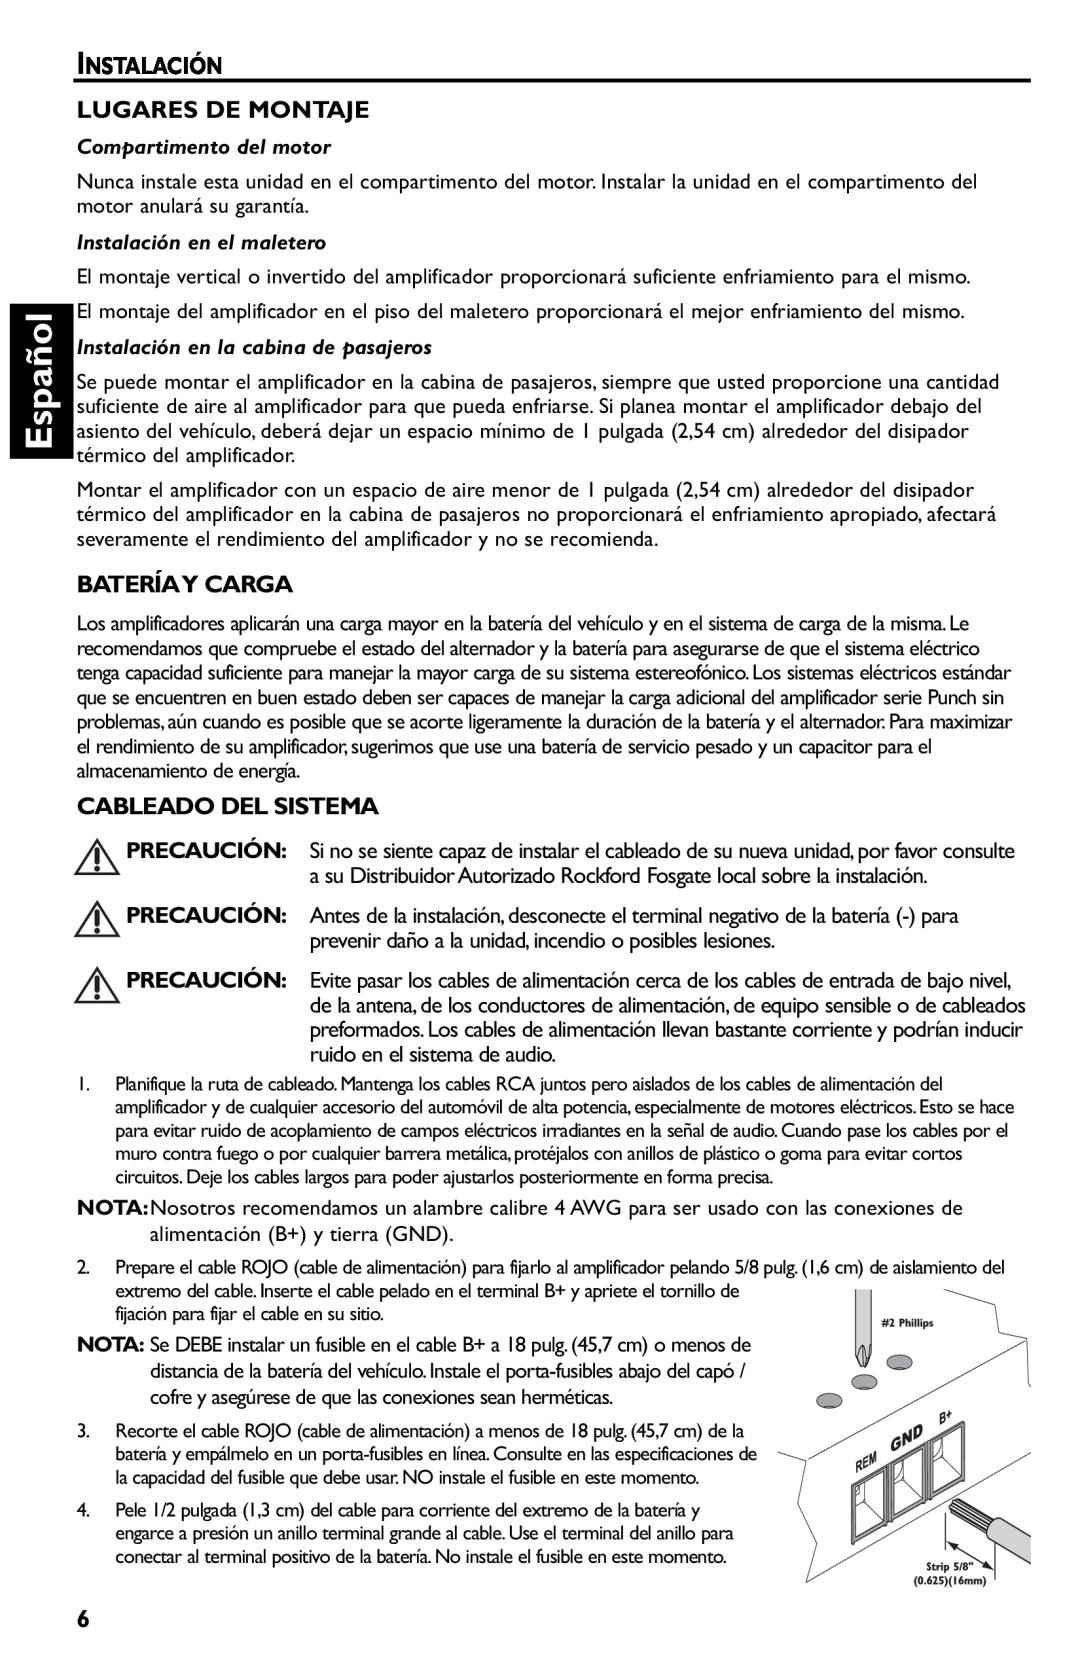 Rockford Fosgate p3002 manual Español, Instalación Lugares De Montaje, Bateríay Carga, Cableado Del Sistema 